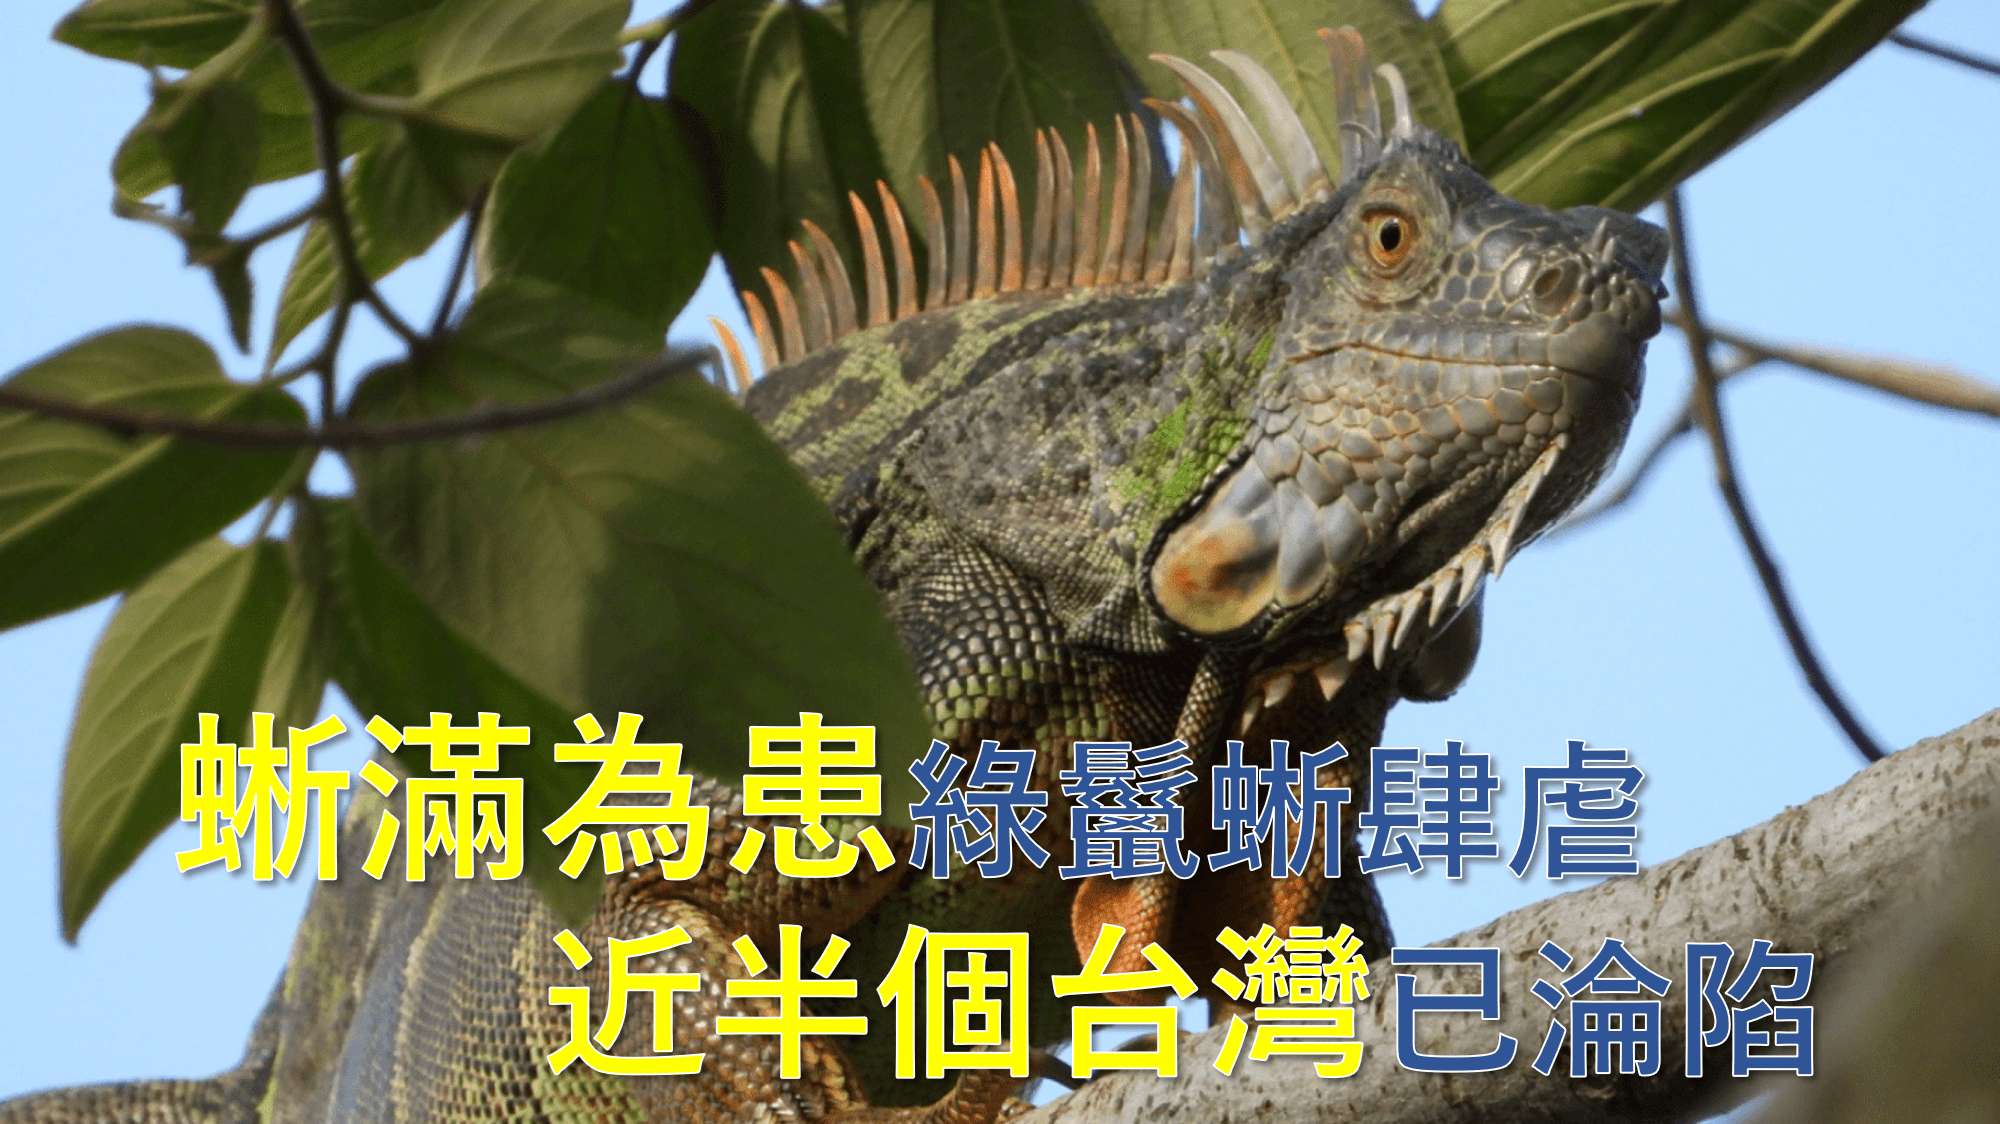 抓不完！綠鬣蜥肆虐 半個台灣已淪陷